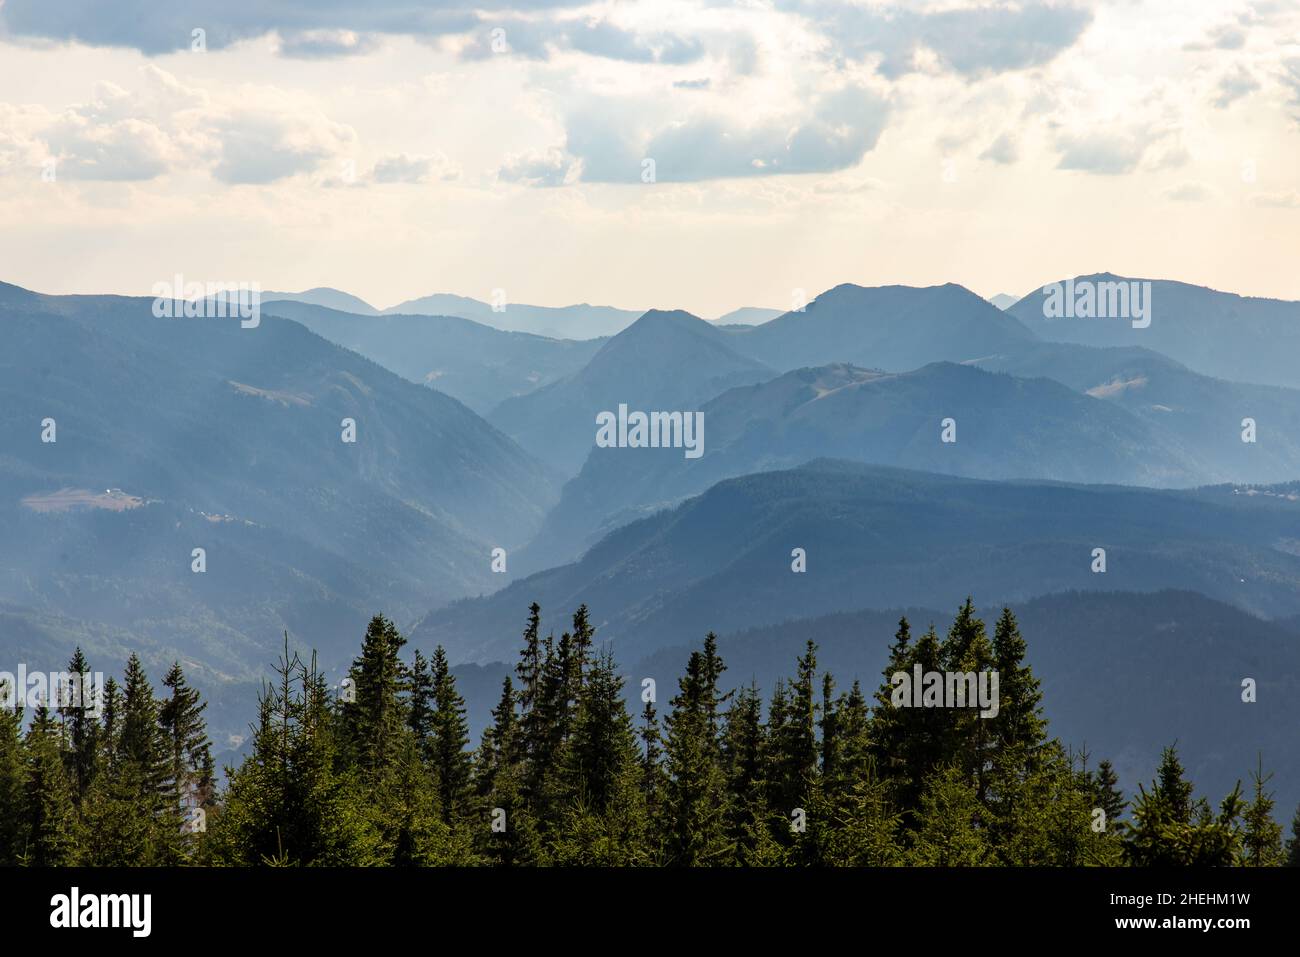 Vista desde el pico Hajla del valle y las montañas de Rugova y del parque nacional Prokletije en el norte de Kosovo, a lo largo de la frontera con Montenegro Foto de stock